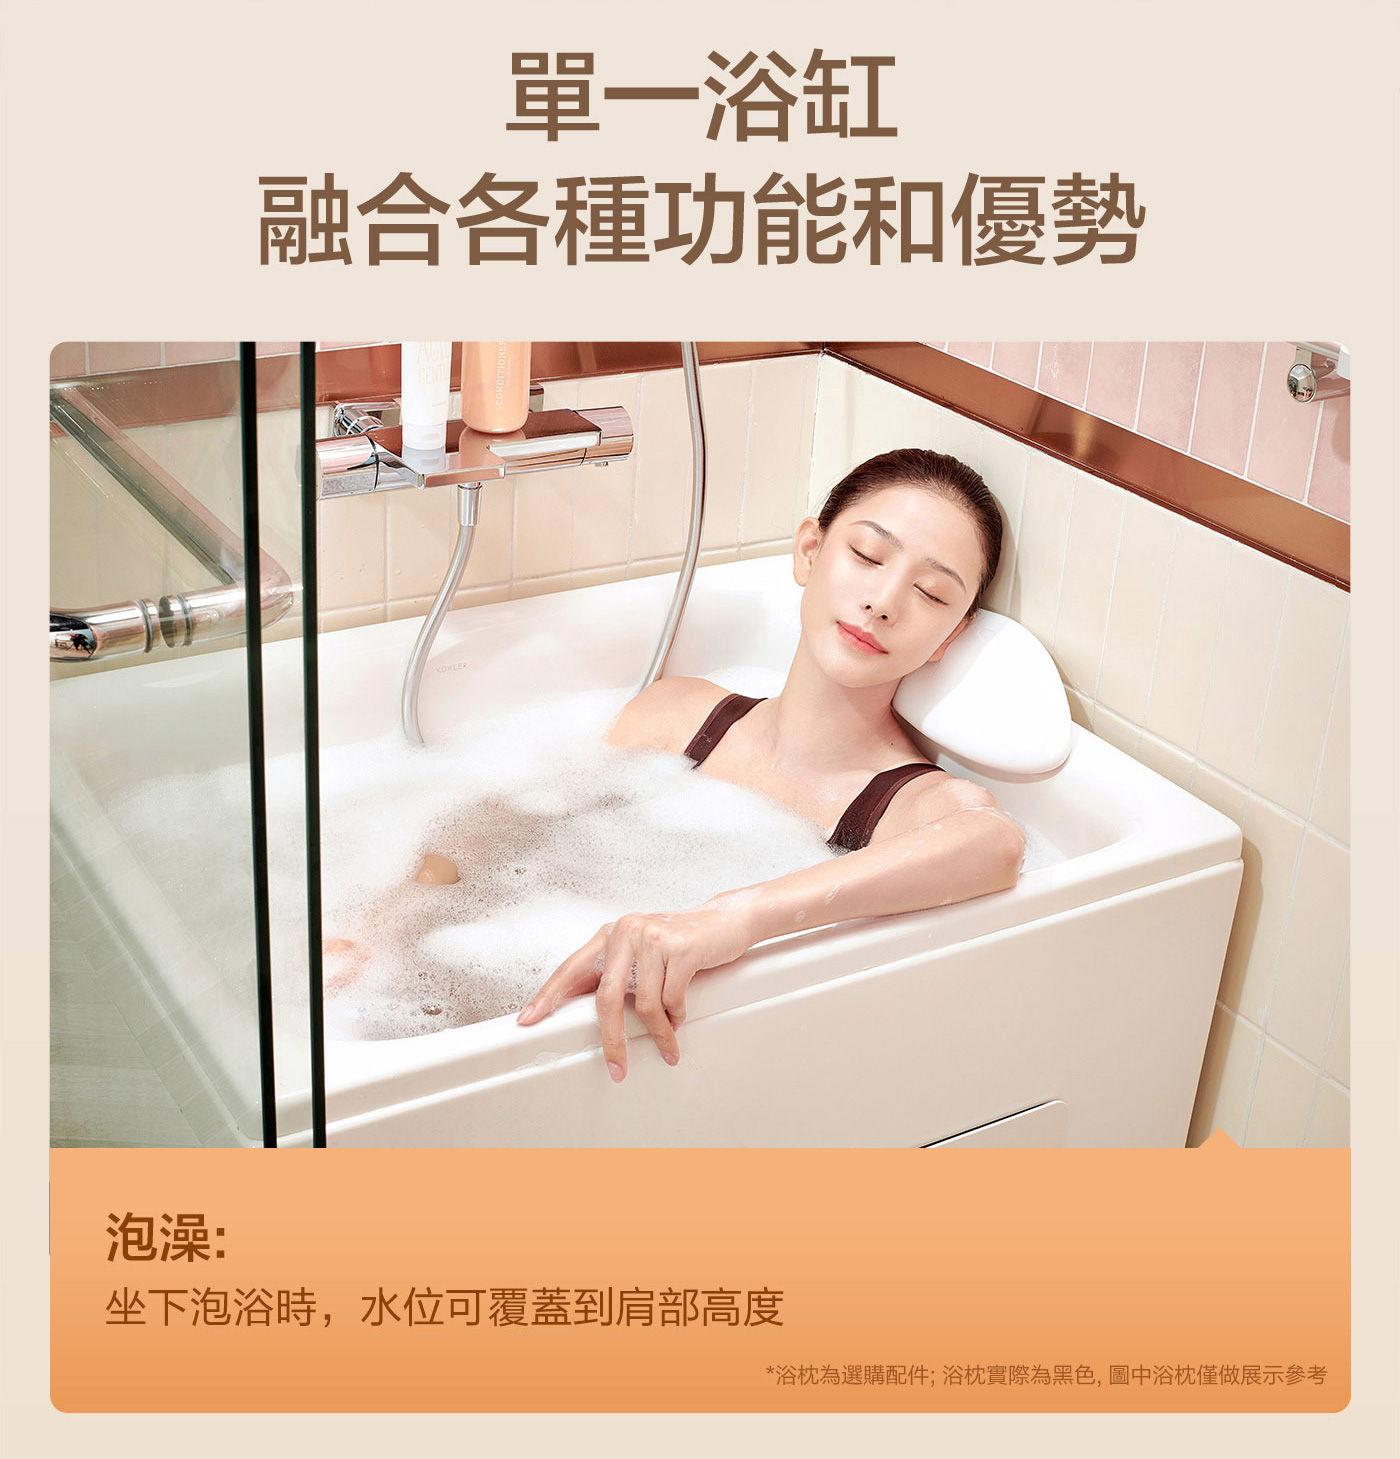 KOHLER 座臥式浴缸右角位 帶腳蹬+外排水單一浴缸融合各種功能和優勢